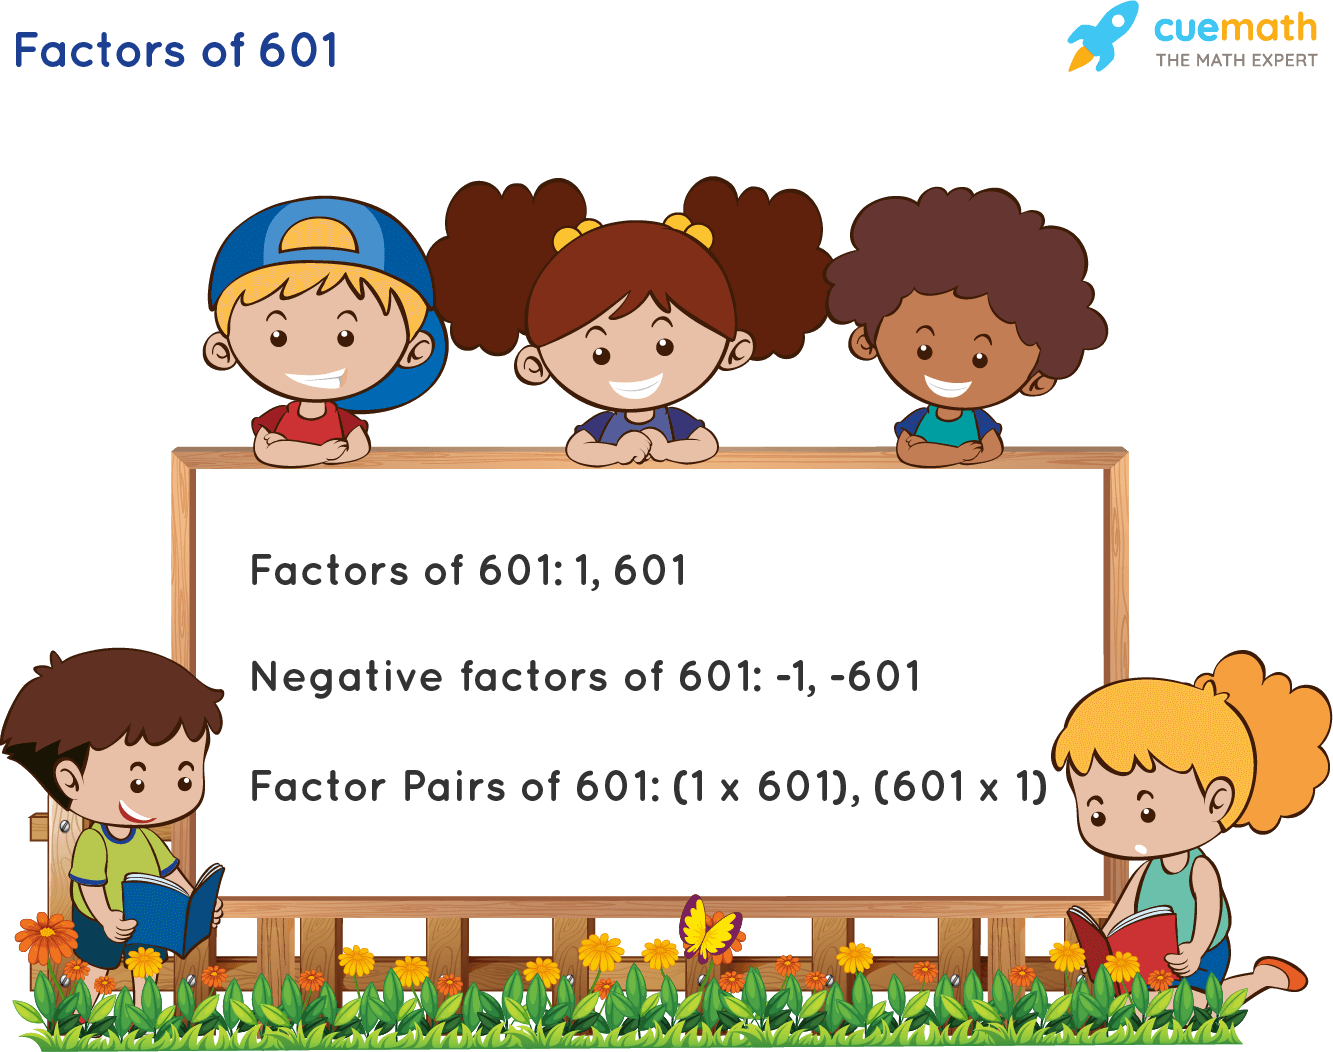 Factors of 601